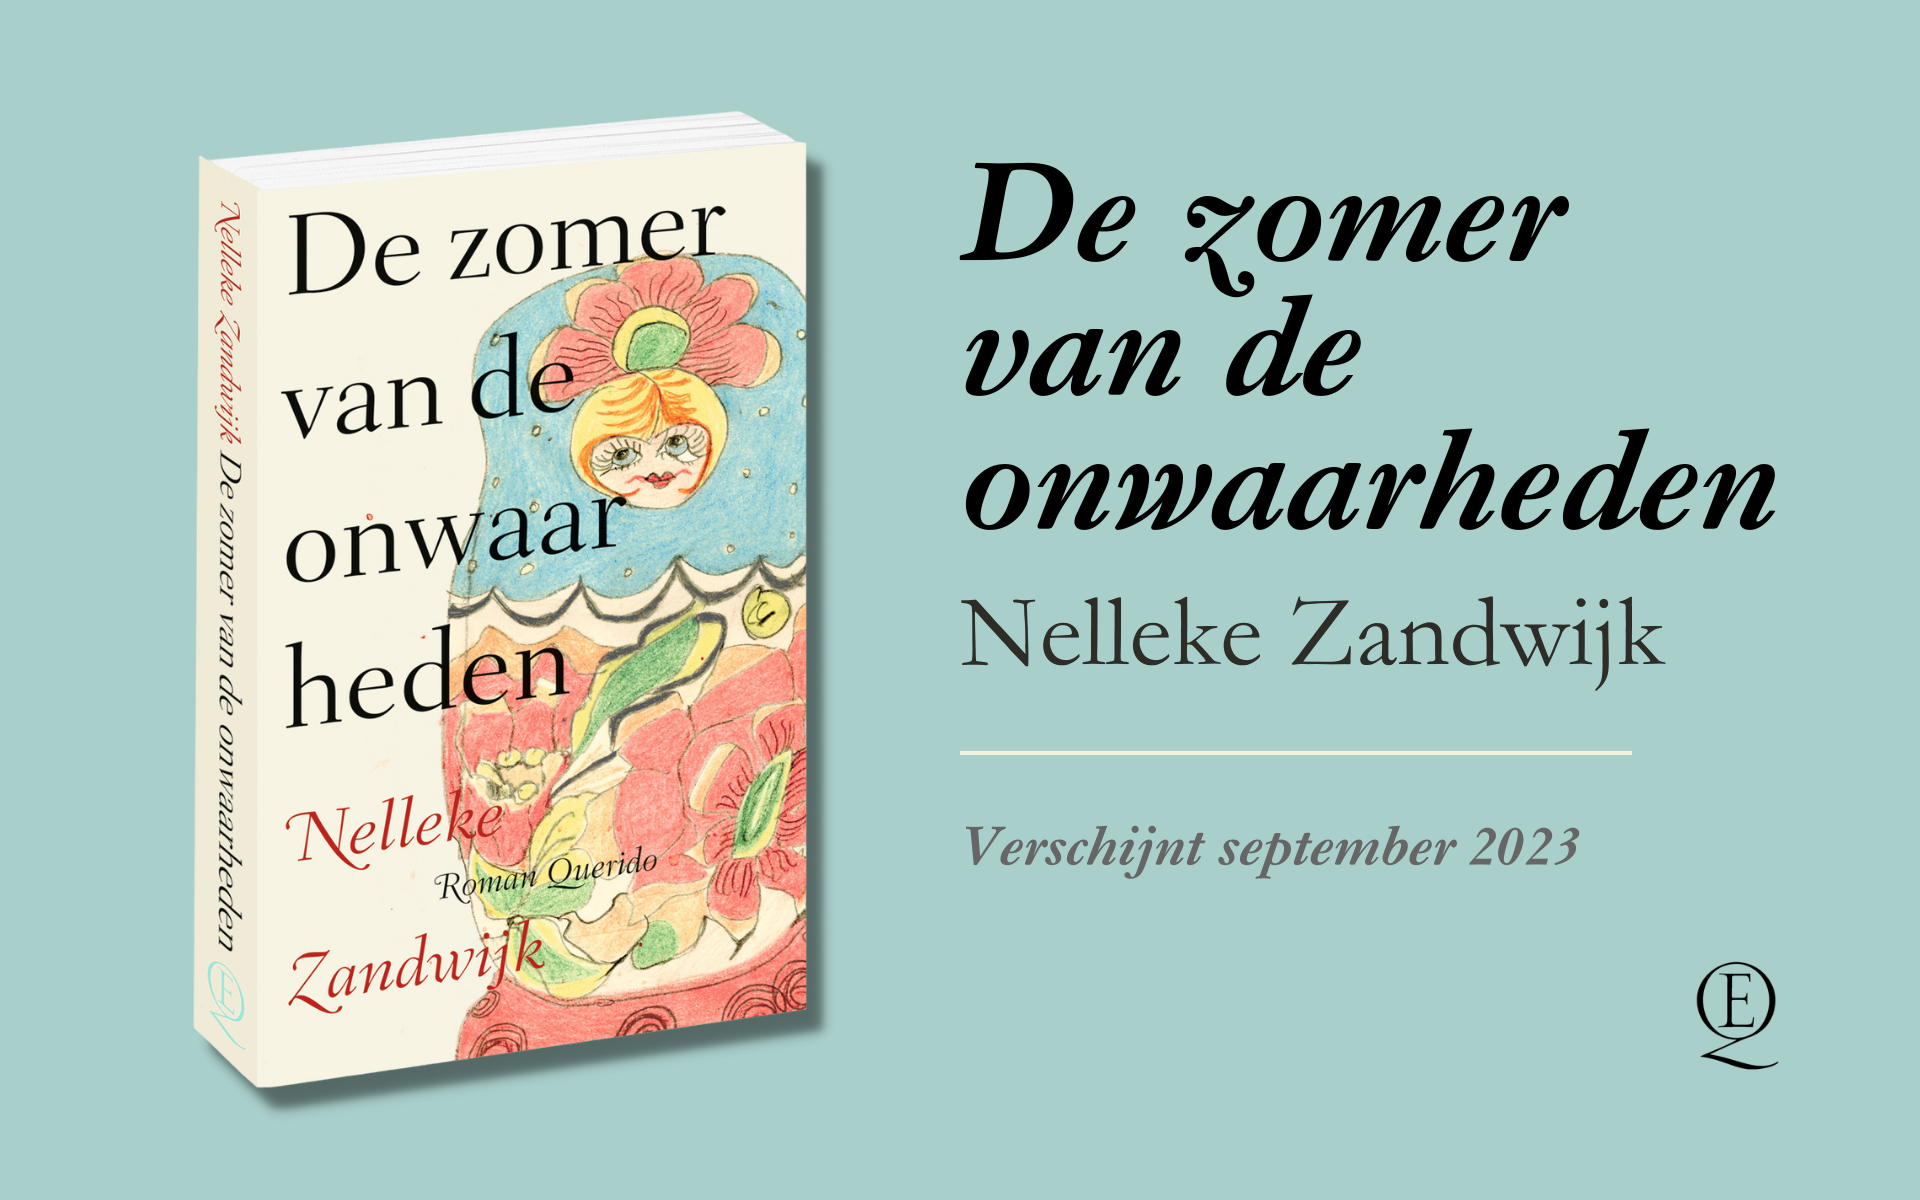 Nelleke Zandwijk